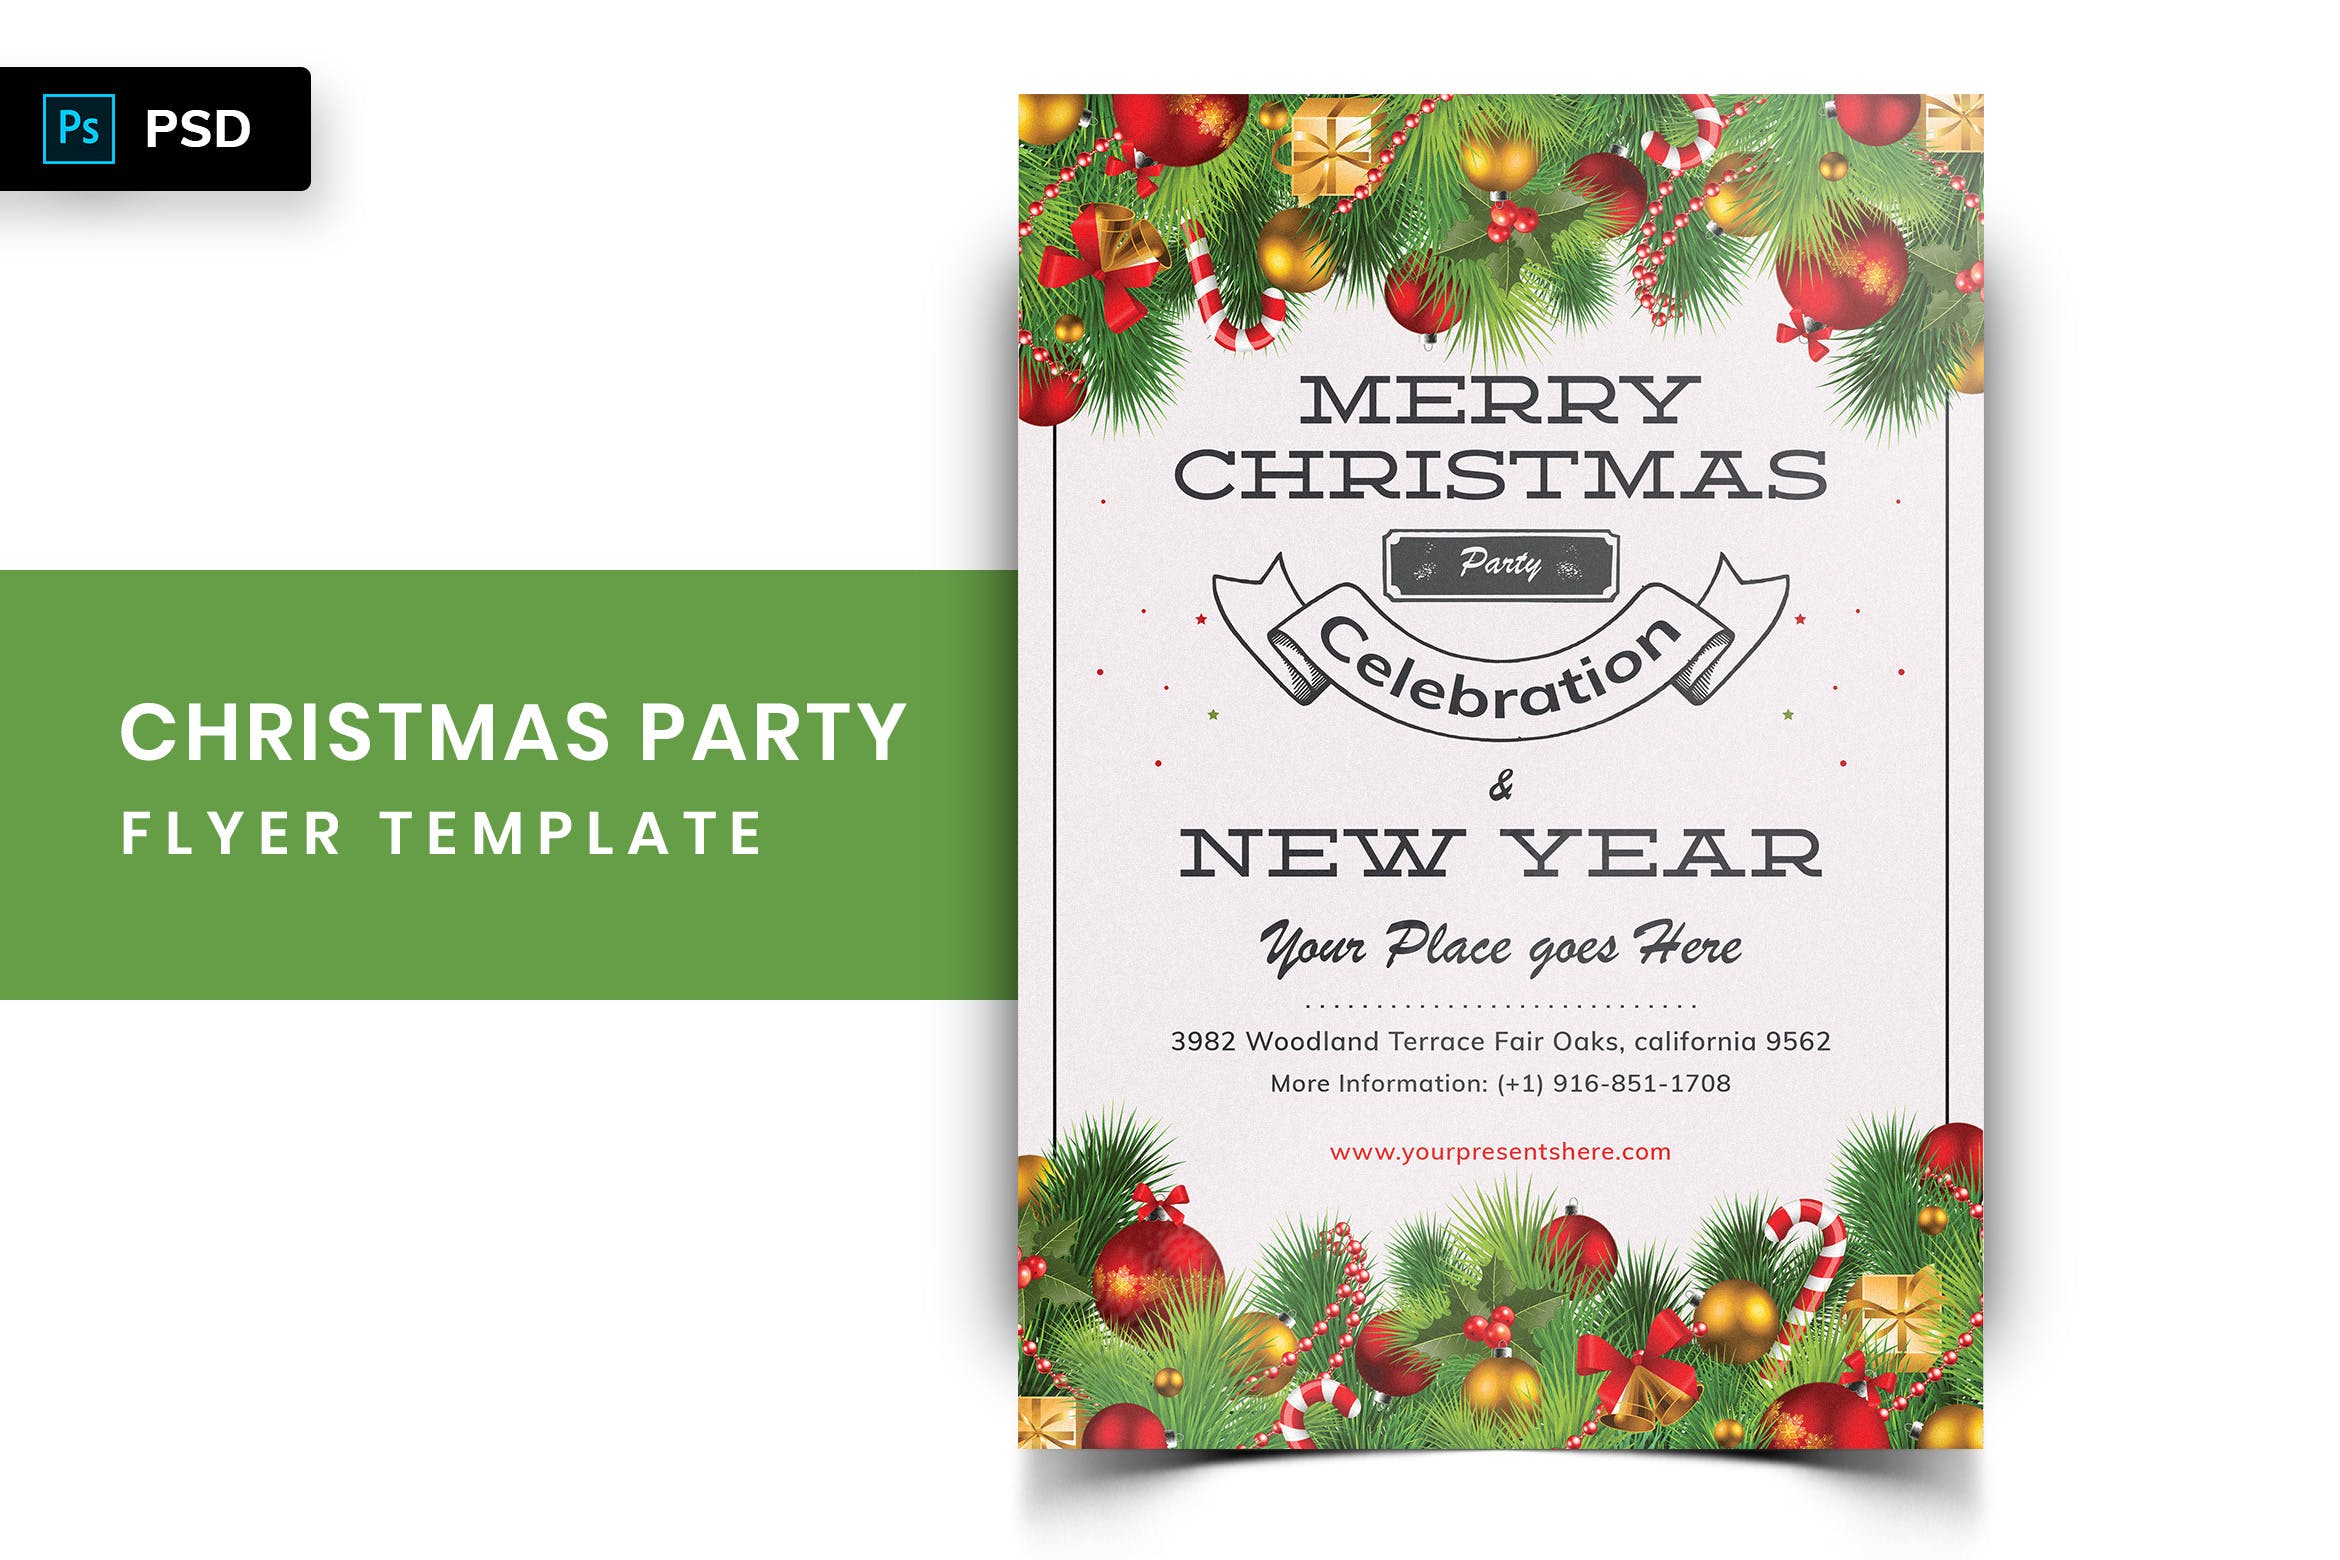 圣诞节暨迎接新年主题派对邀请海报传单模板v1 Christmas Party Flyer-04插图